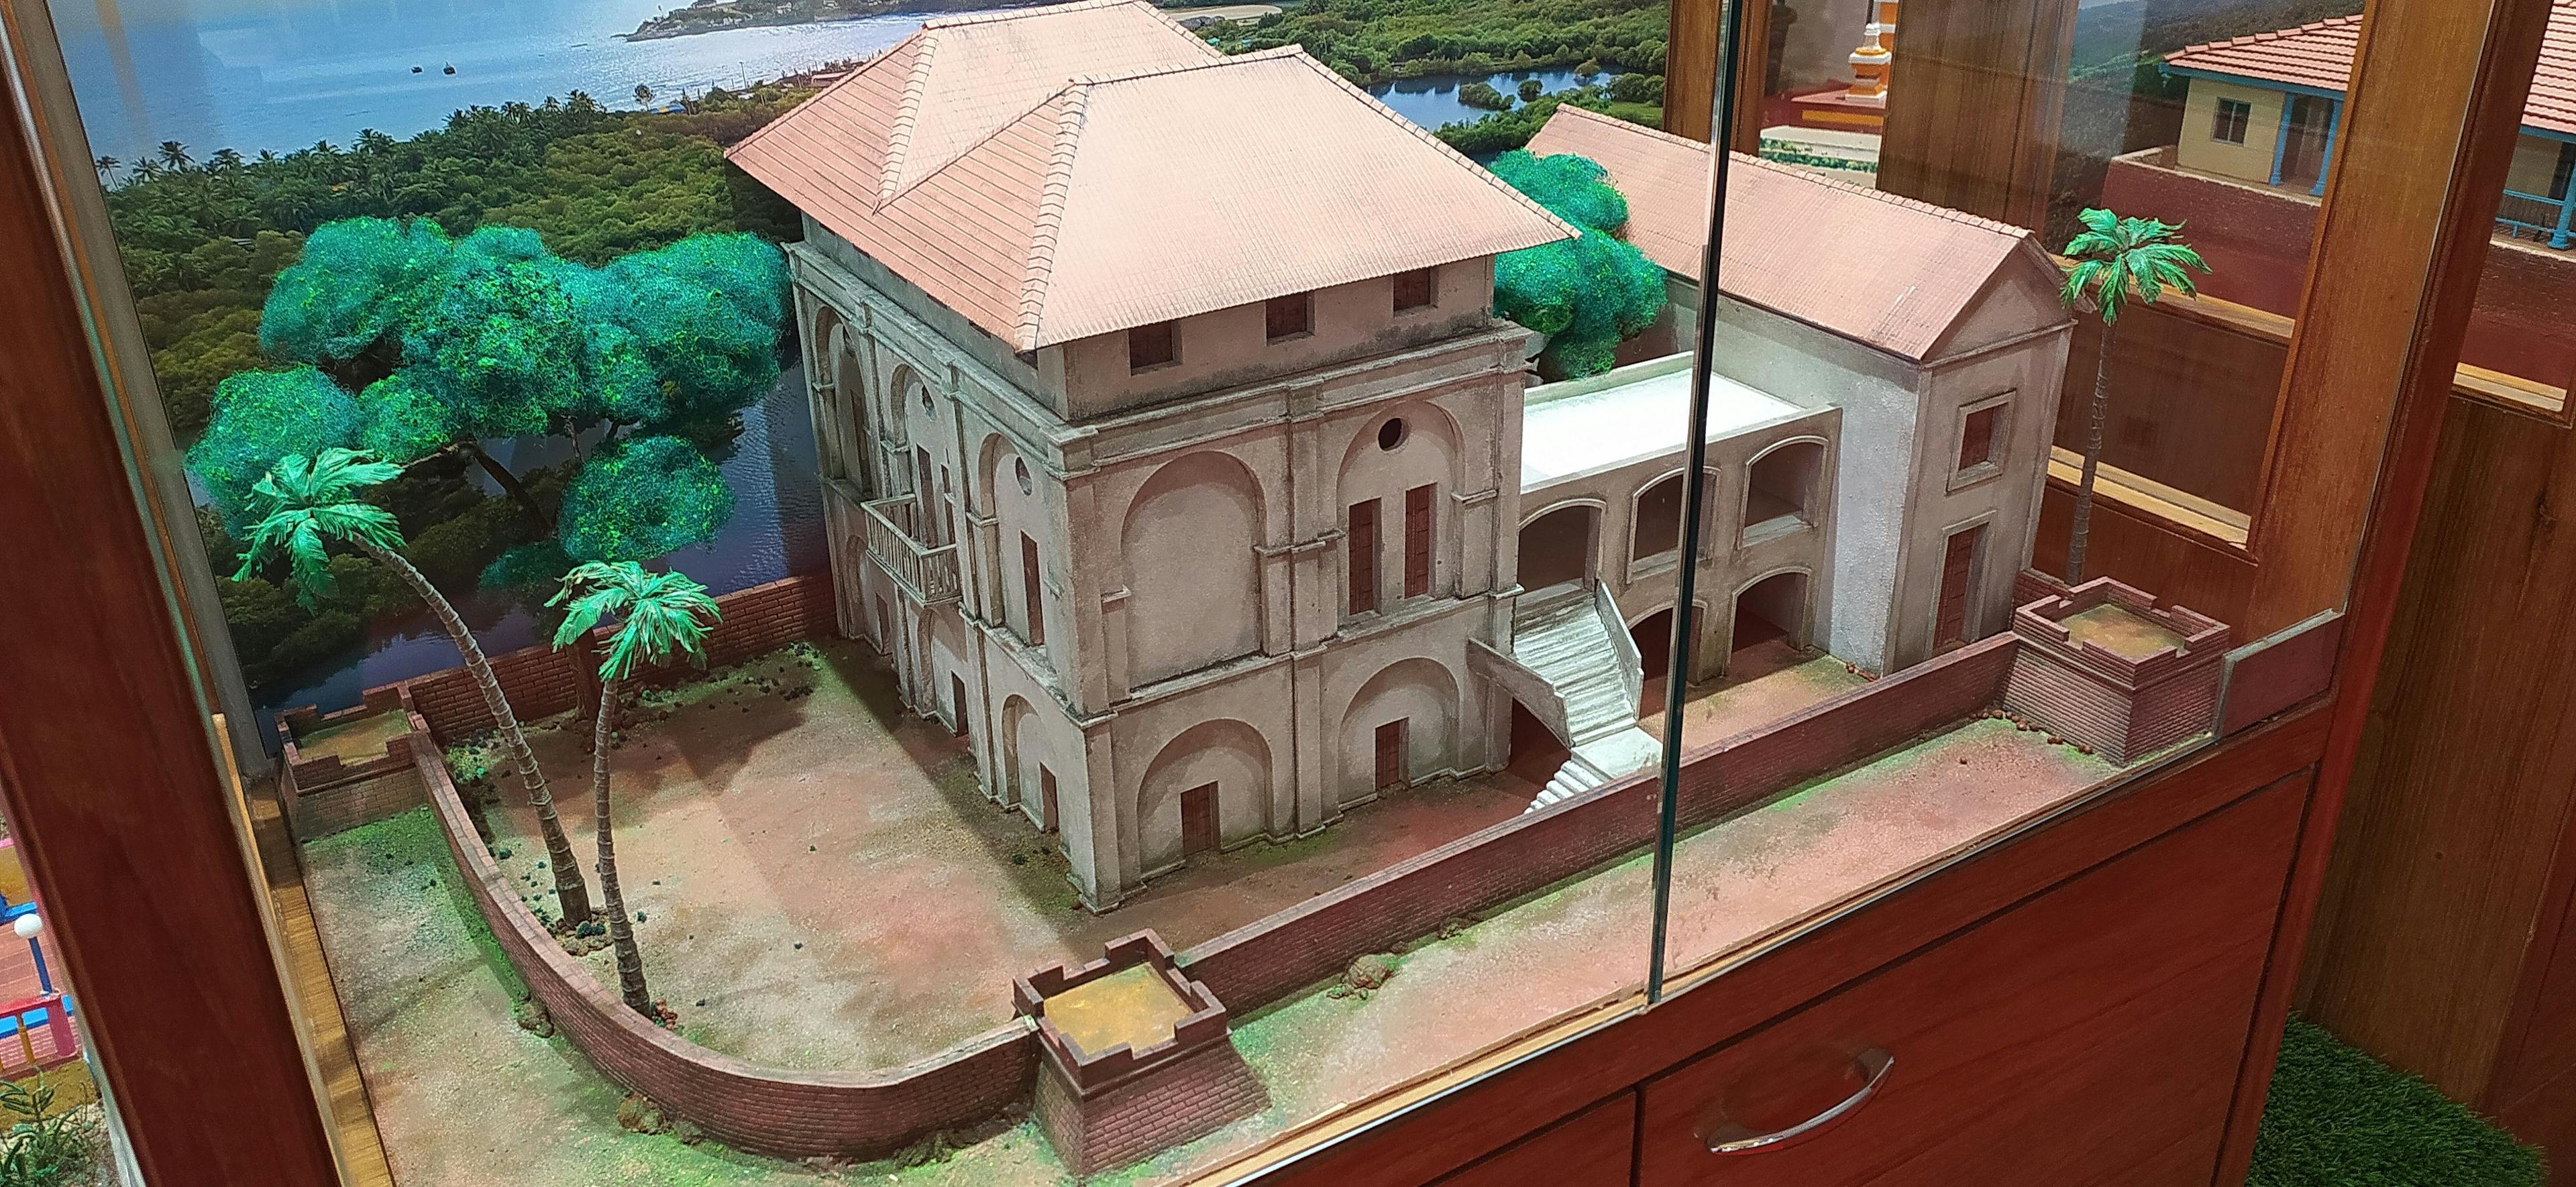 A diorama of Vengurla's Dutch Factory 